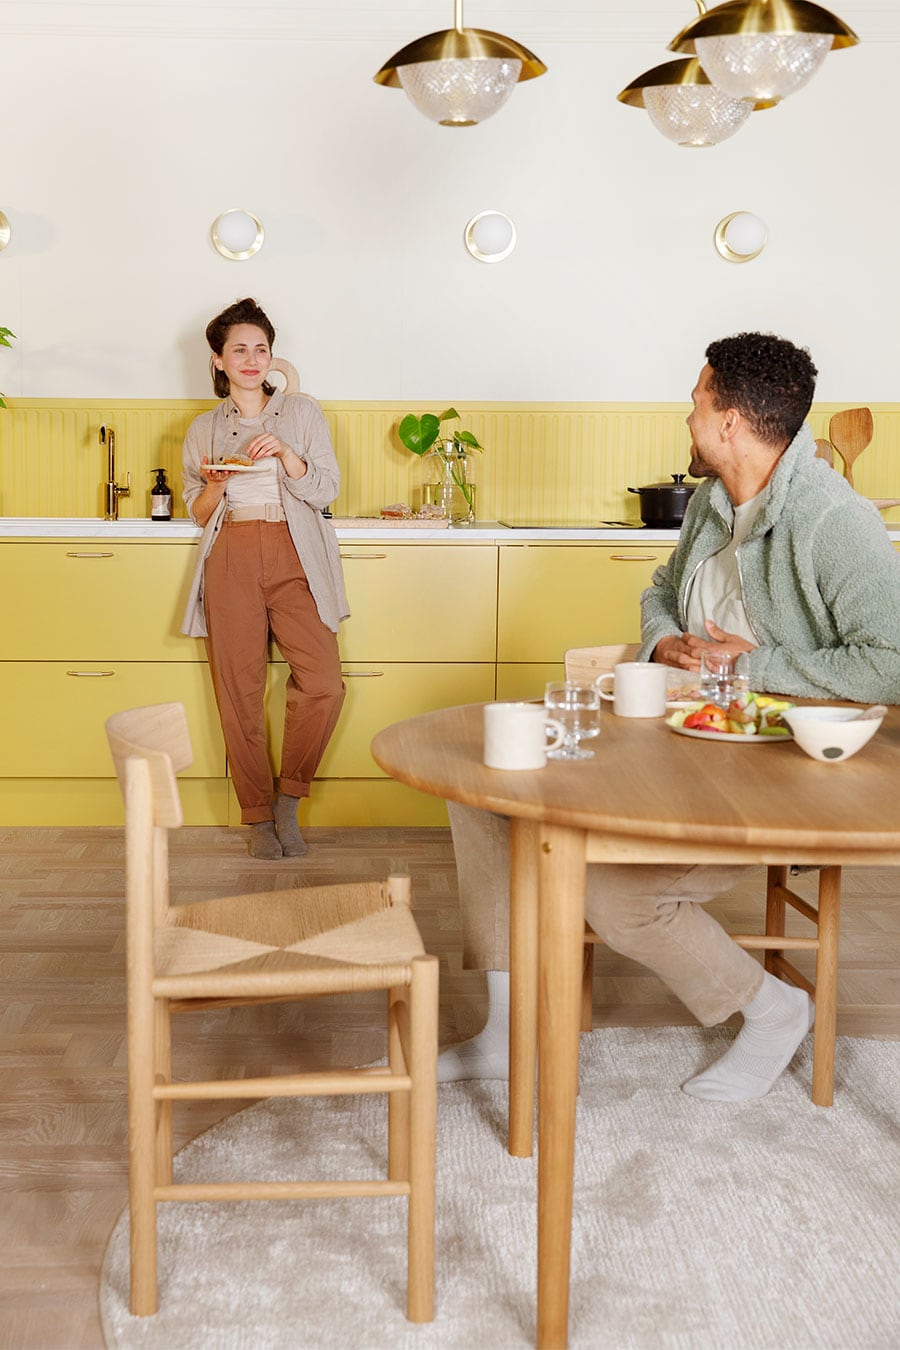 Gult EPOQ Trend-køkken med mand der sidder ved et bord og kvinde der står ved vasken